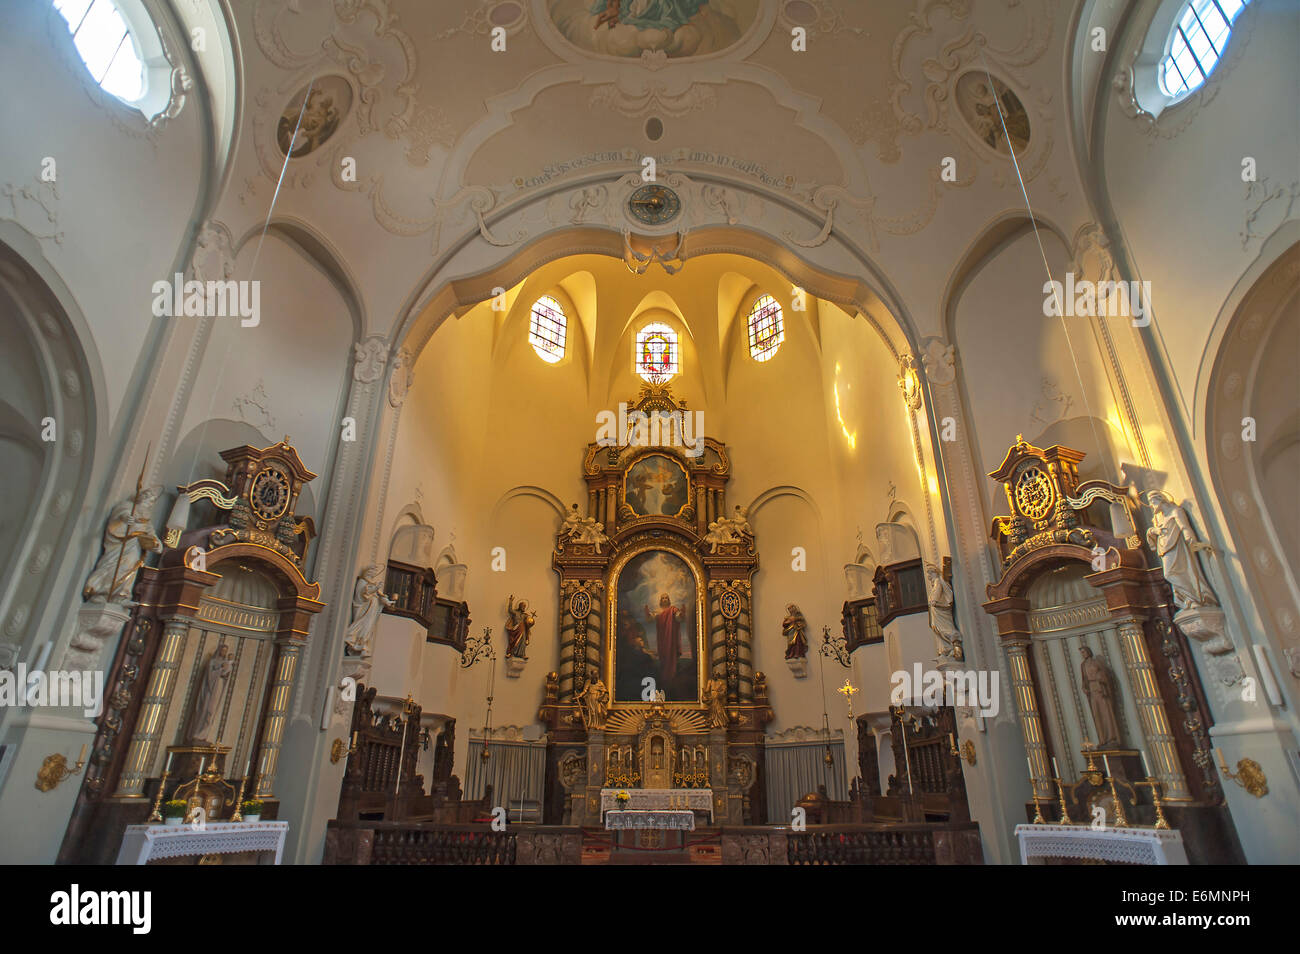 Coro, iglesia parroquial de los Santos Pedro y Pablo, Lindenberg, Allgäu, Baviera, Alemania Foto de stock